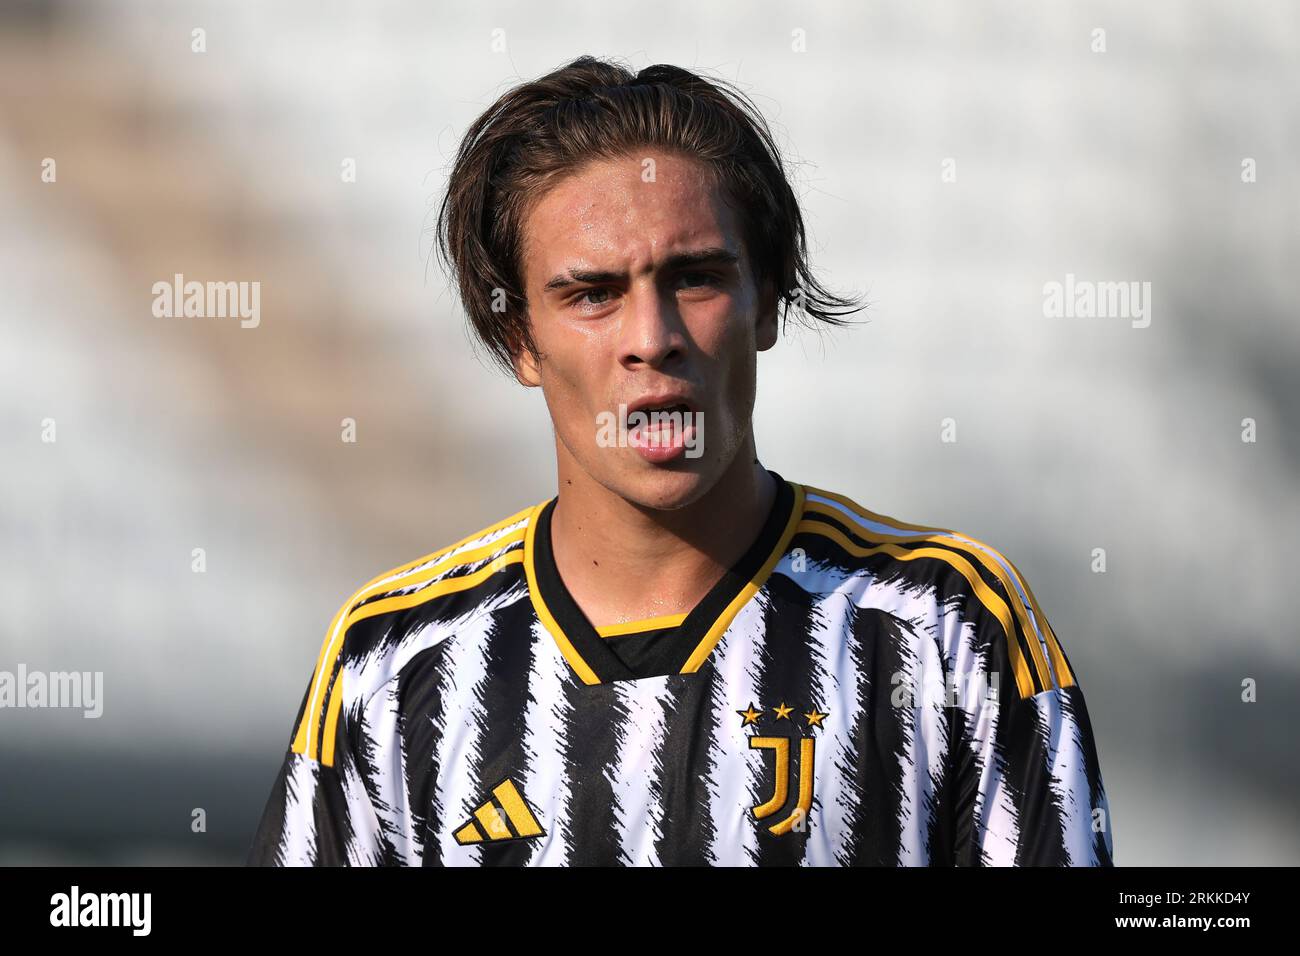 Kenan Yildiz of Juventus Next Gen celebrate after scoring during the  News Photo - Getty Images